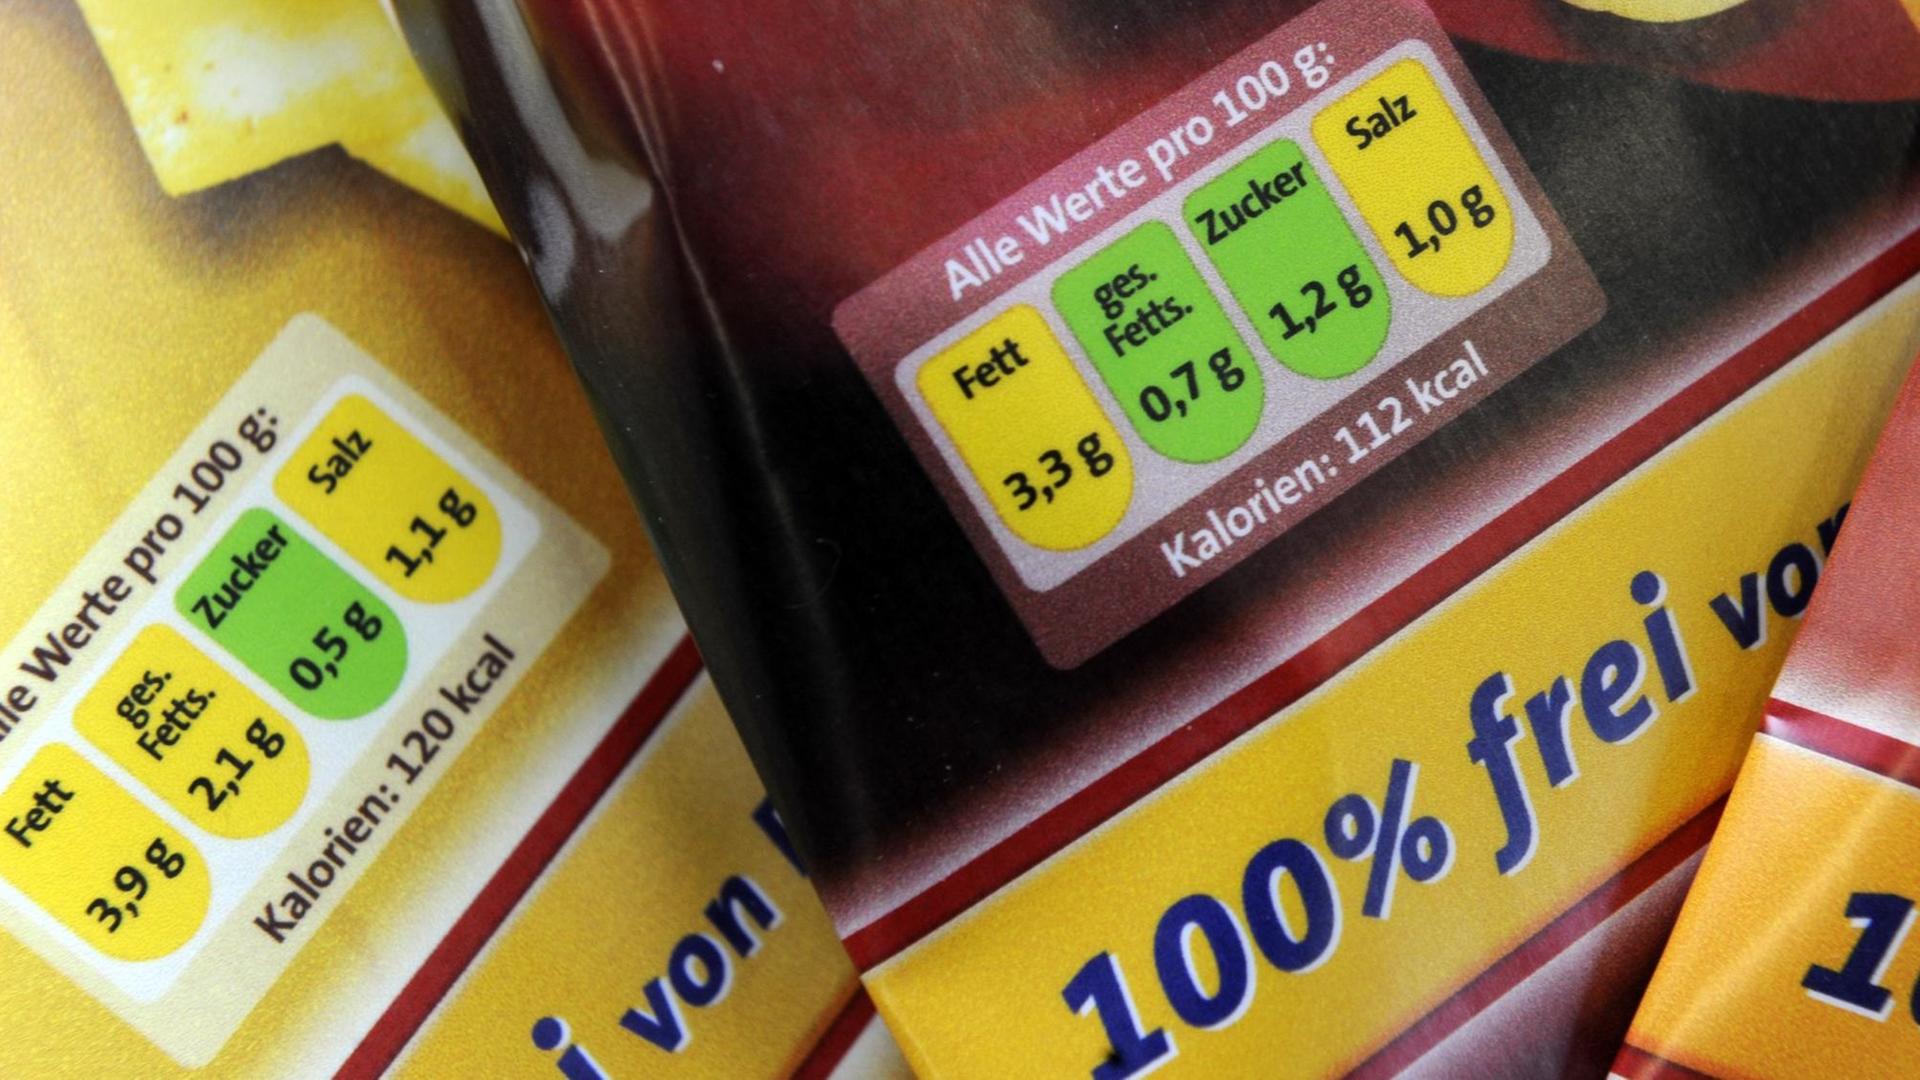 Mit einer Ampel-Kennzeichnung für Lebensmittel sind diese Produkte auf einer Pressekonferenz zur Nährwertkennzeichnung in Berlin ausgewisen.